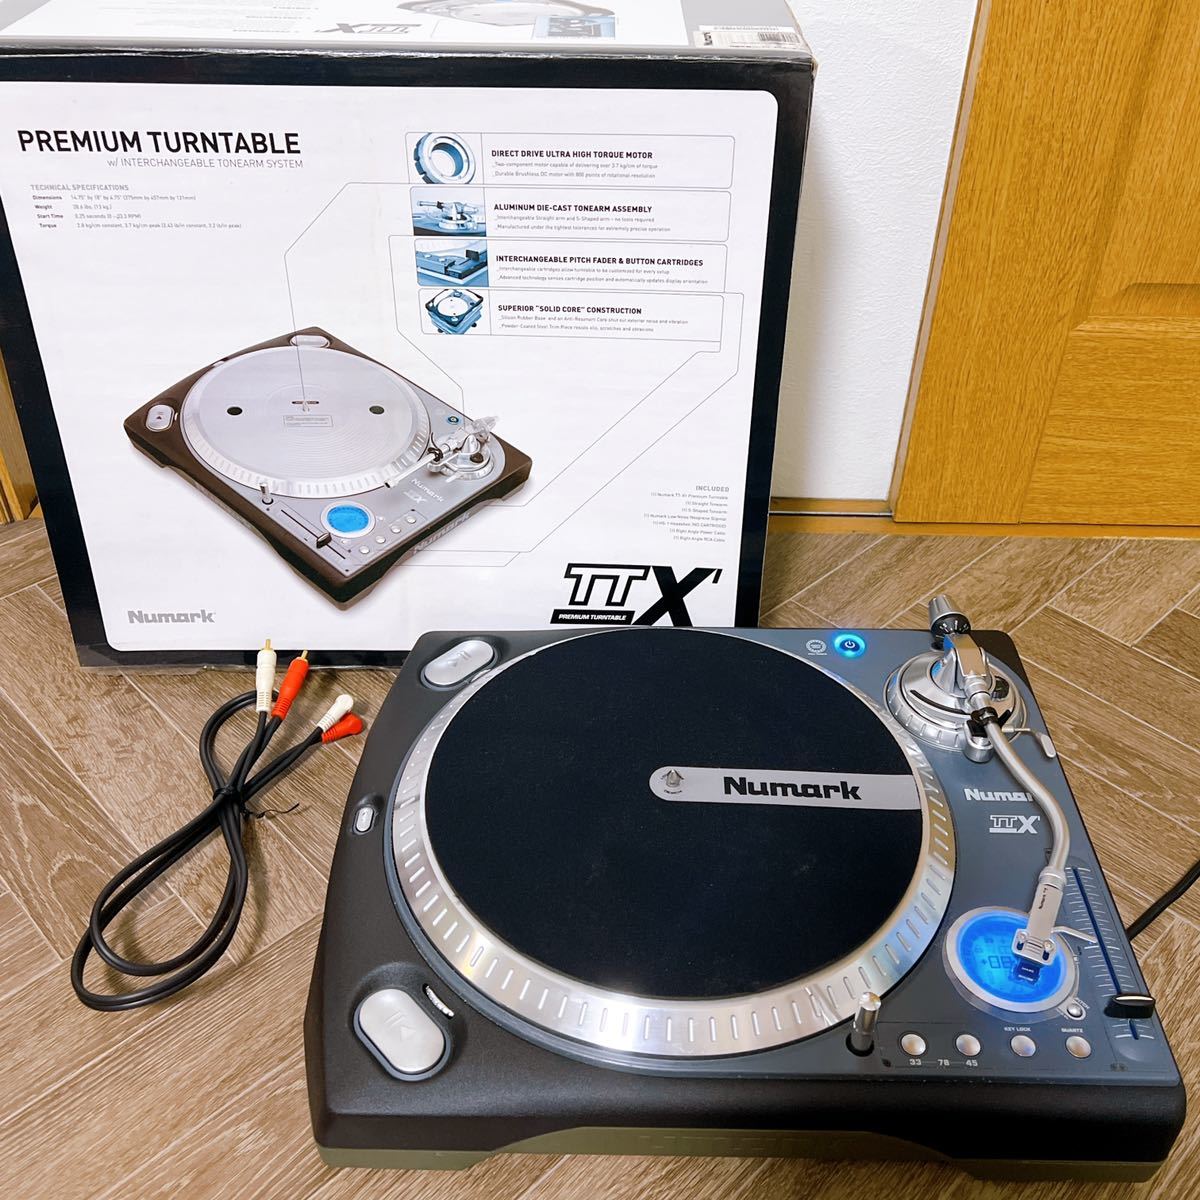 売切 Numark ターンテーブル TTX ヌマーク DJ機器 レコードプレーヤー